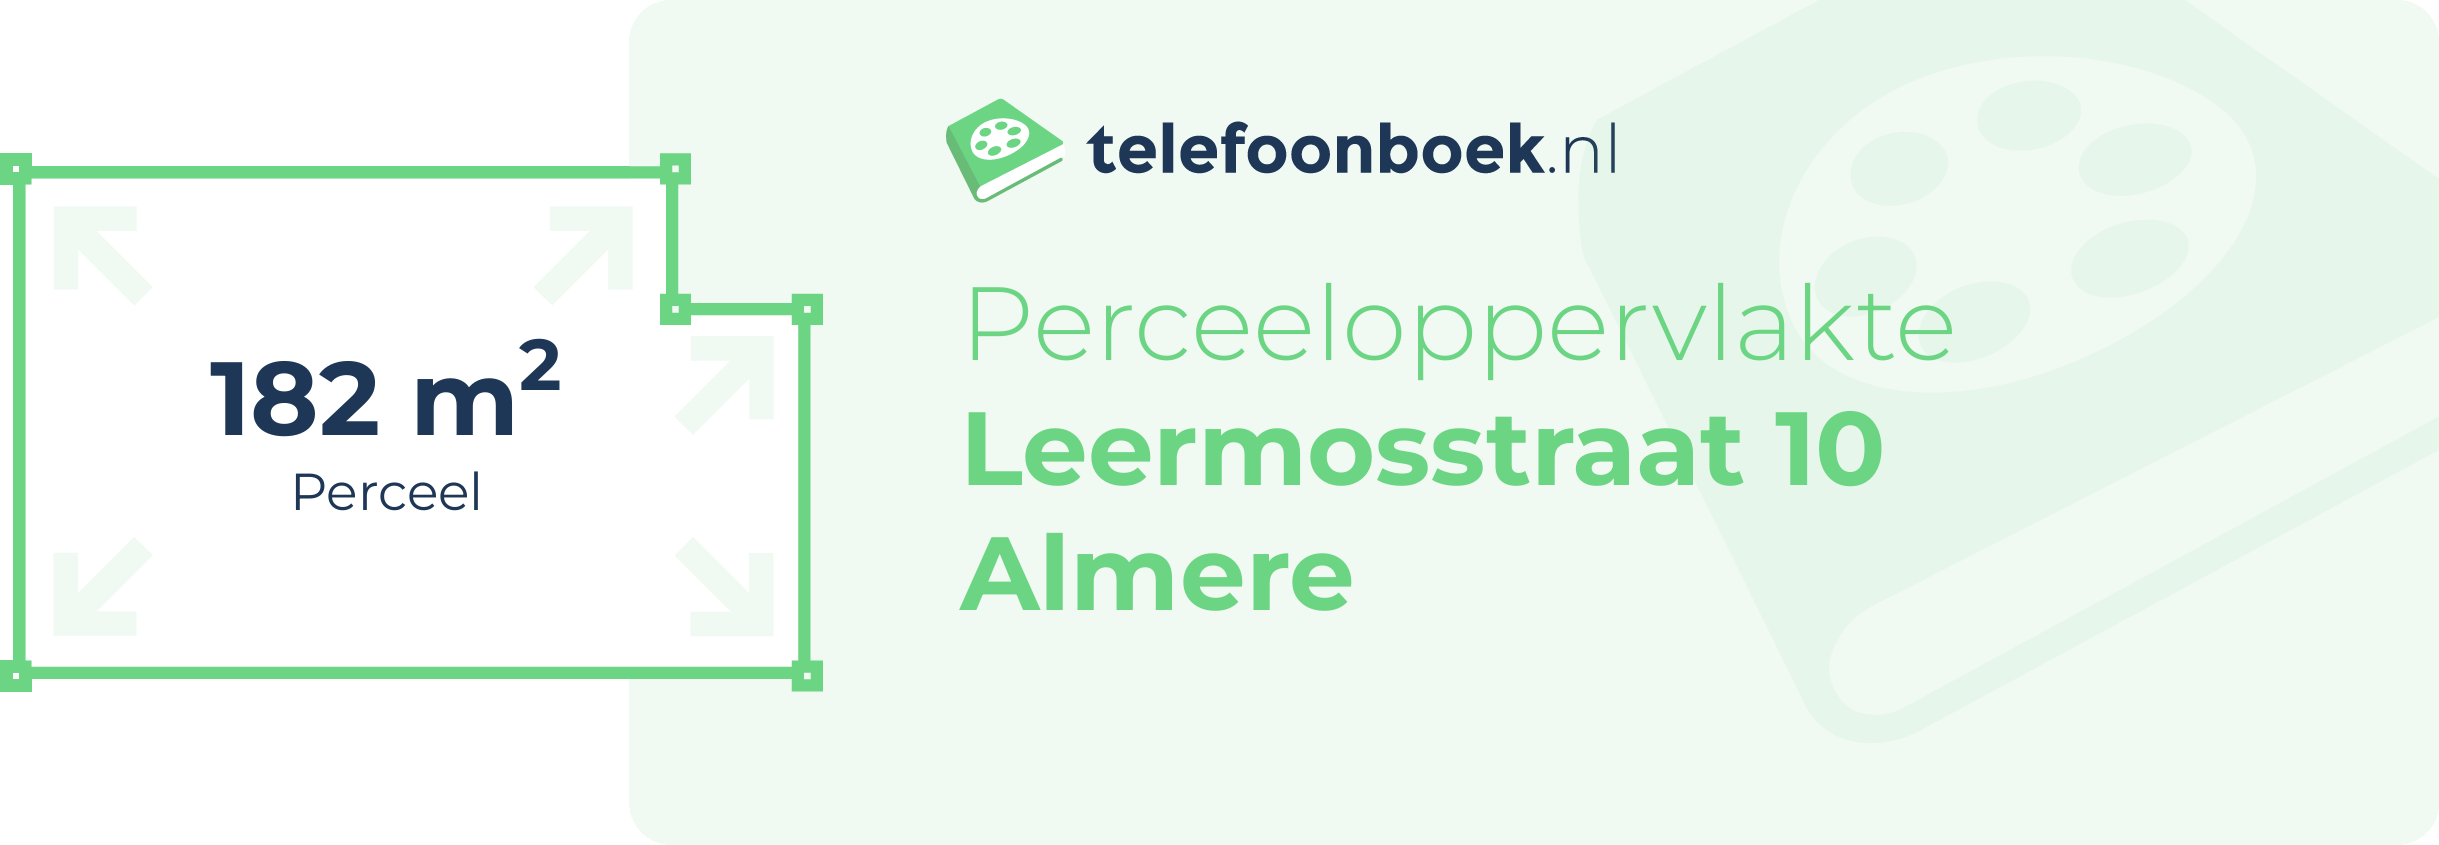 Perceeloppervlakte Leermosstraat 10 Almere